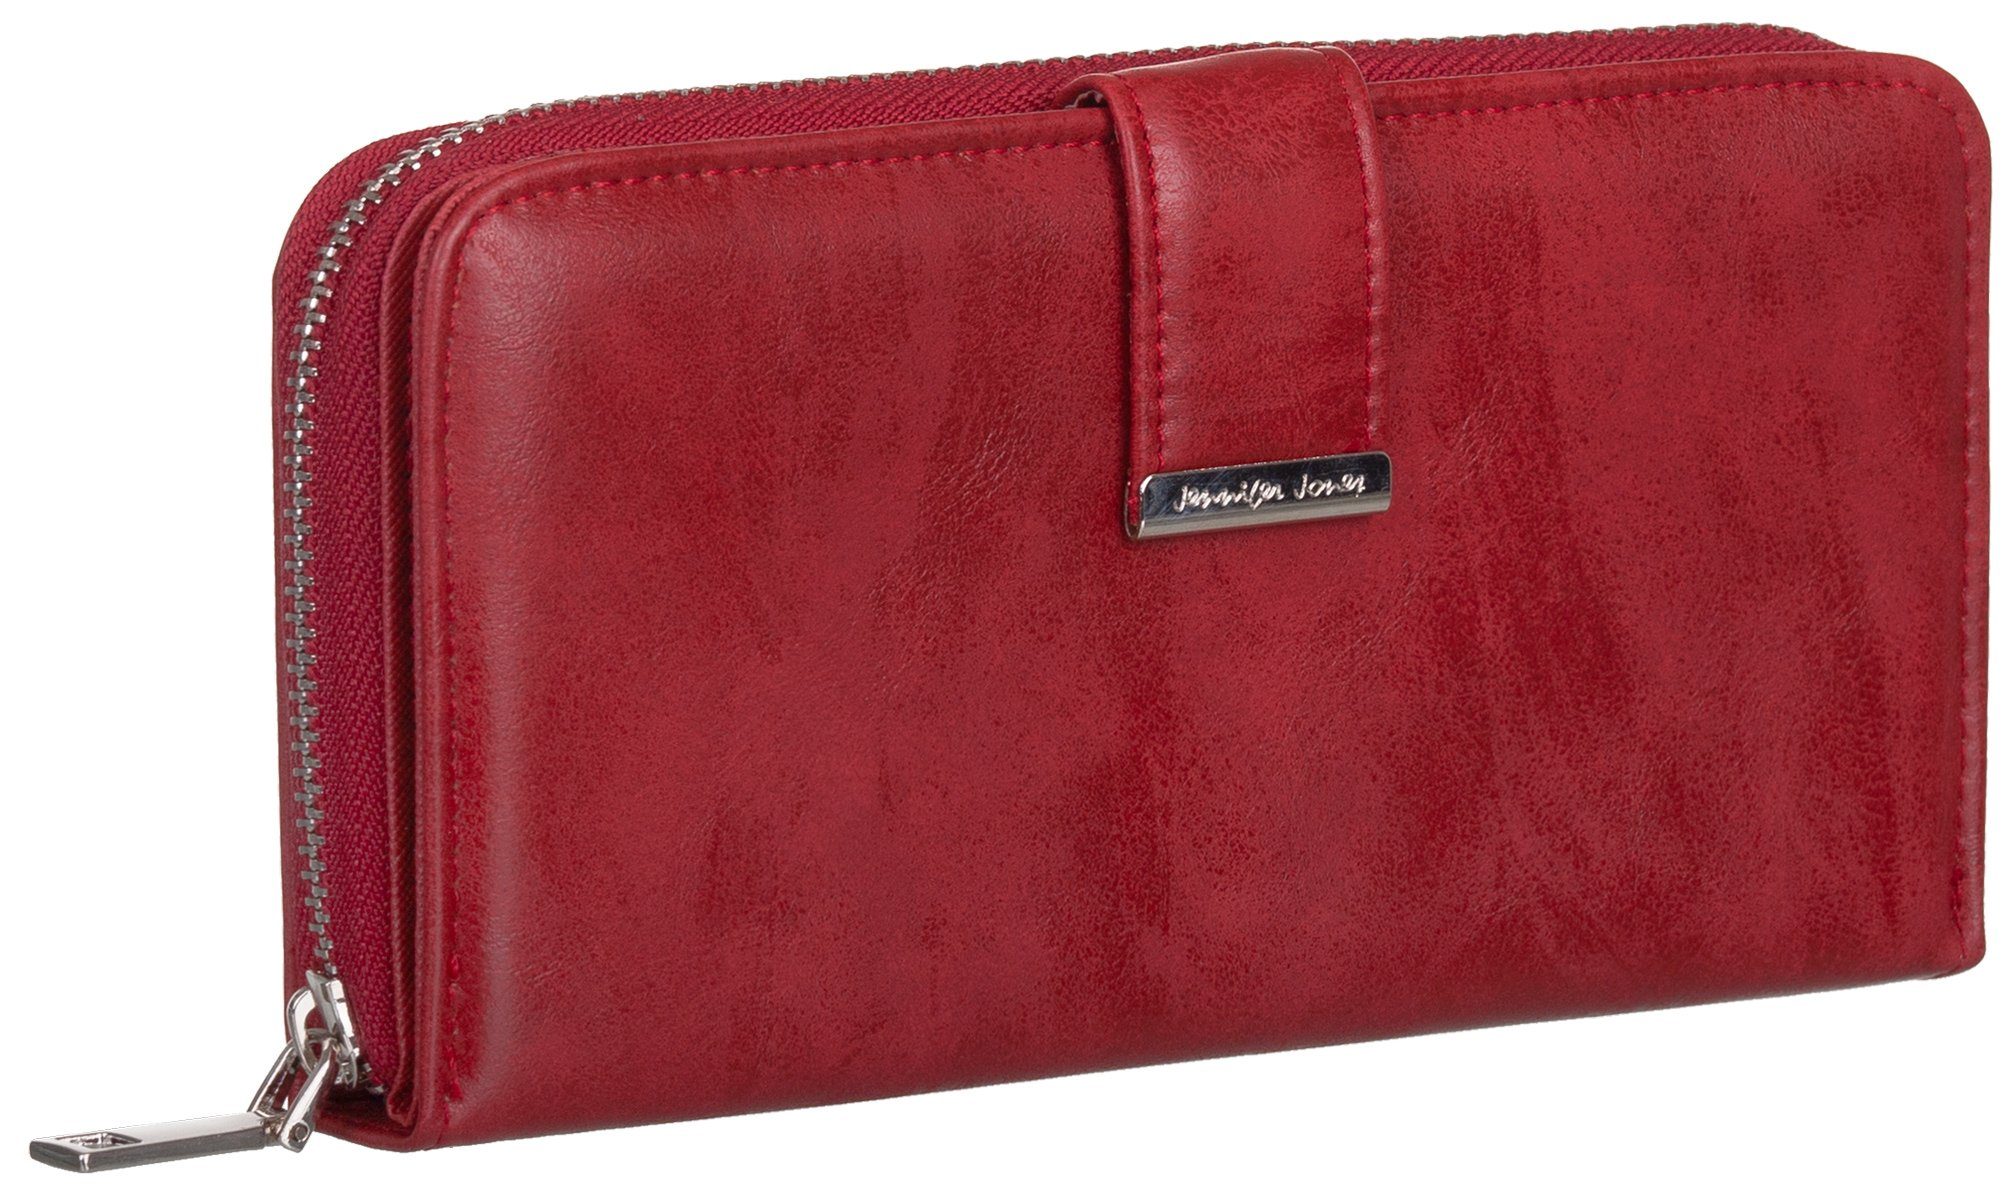 Jennifer Jones Geldbörse, Damen Geldbörse klappbar mit Reißverschluss Portemonnaie Geldbeutel rot